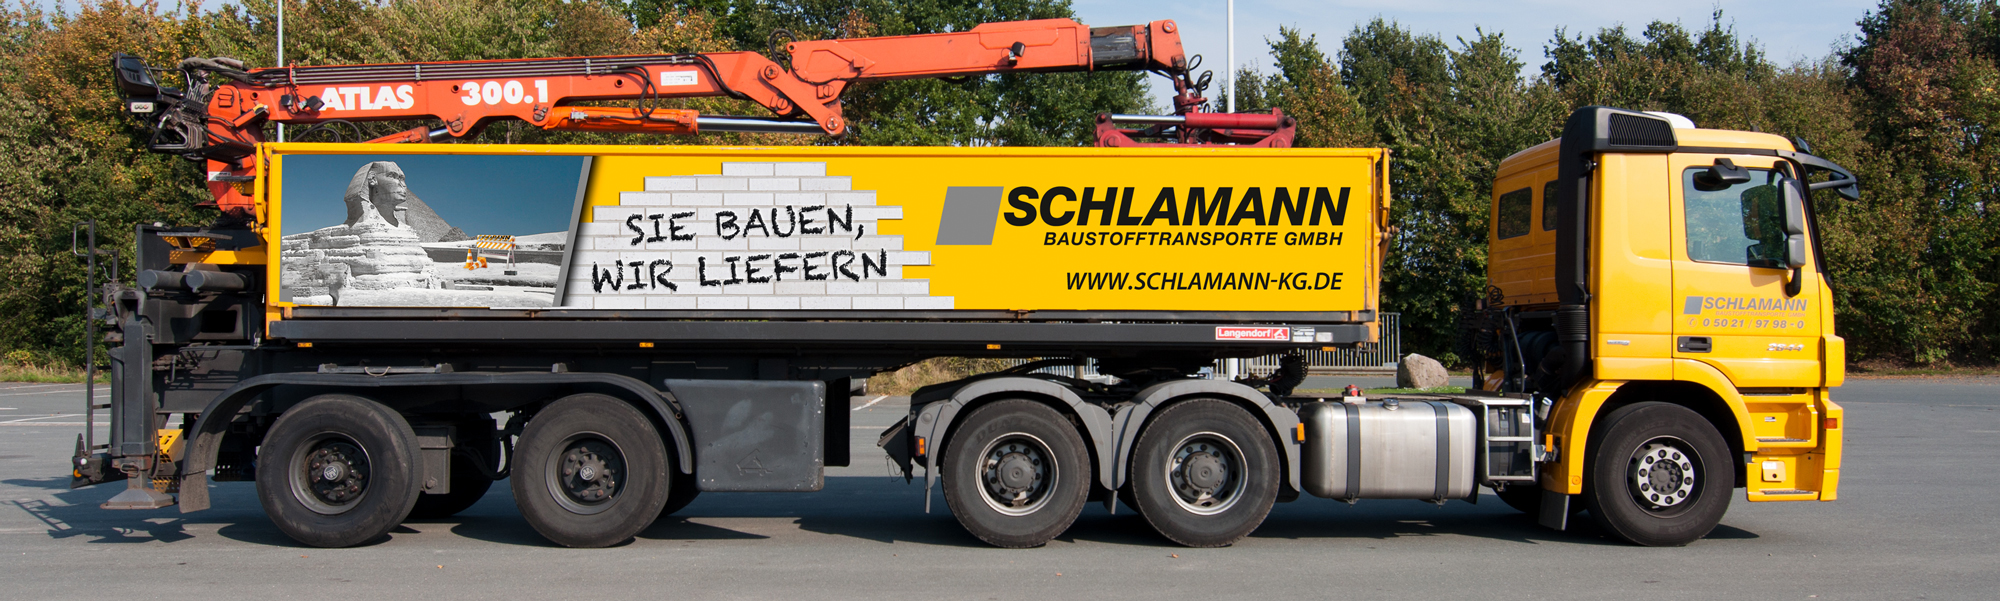 LKW-Beschriftung: Schlamann